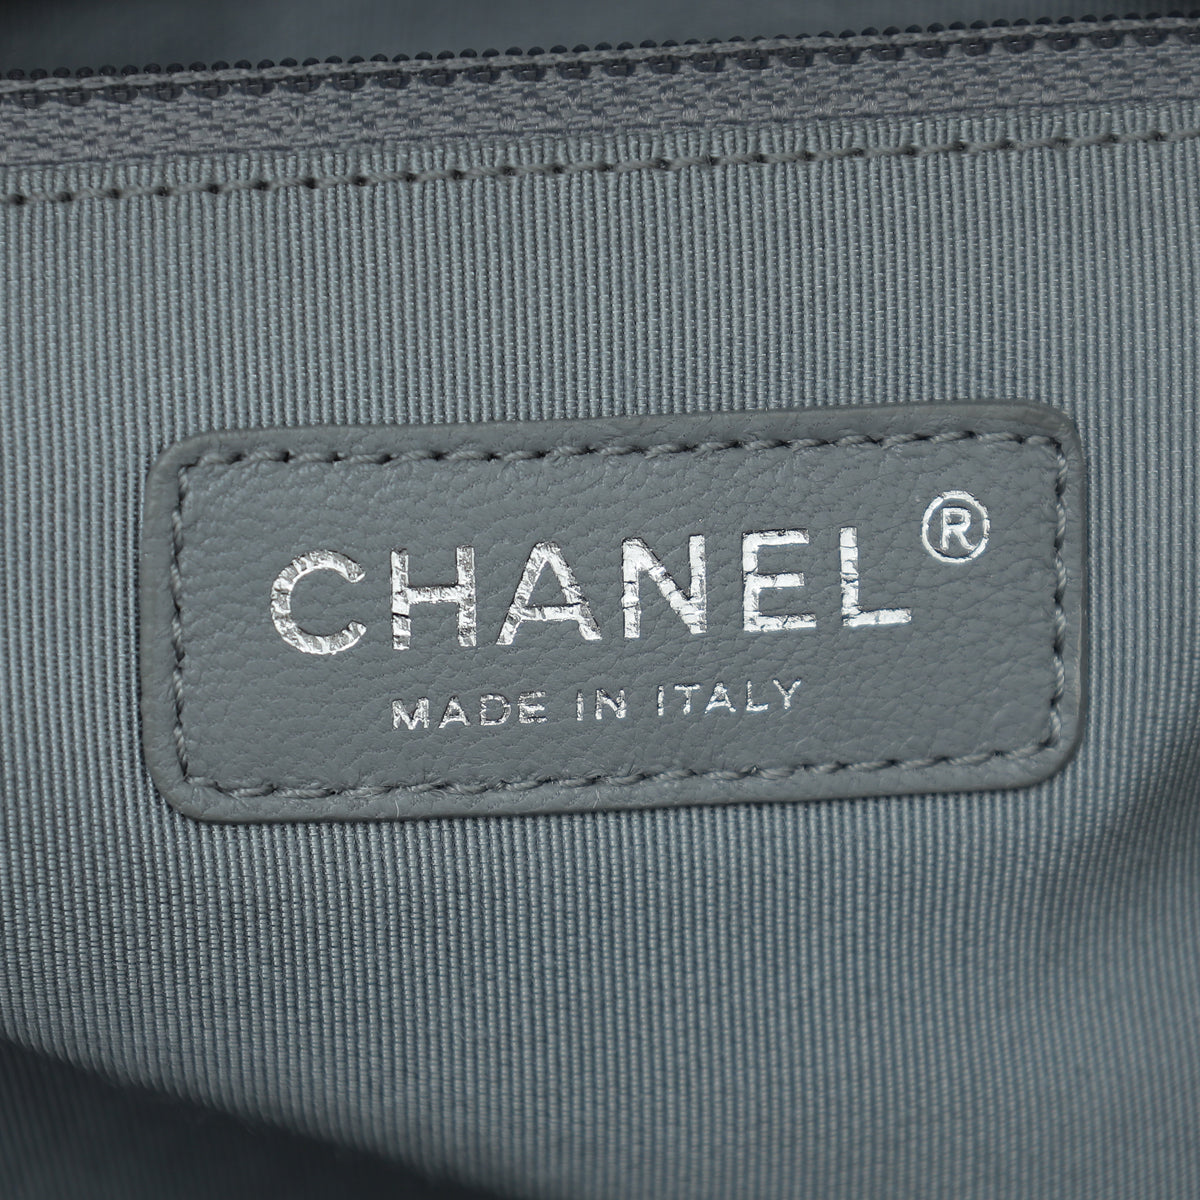 Chanel Black Le Boy Large Flap Bag – The Closet